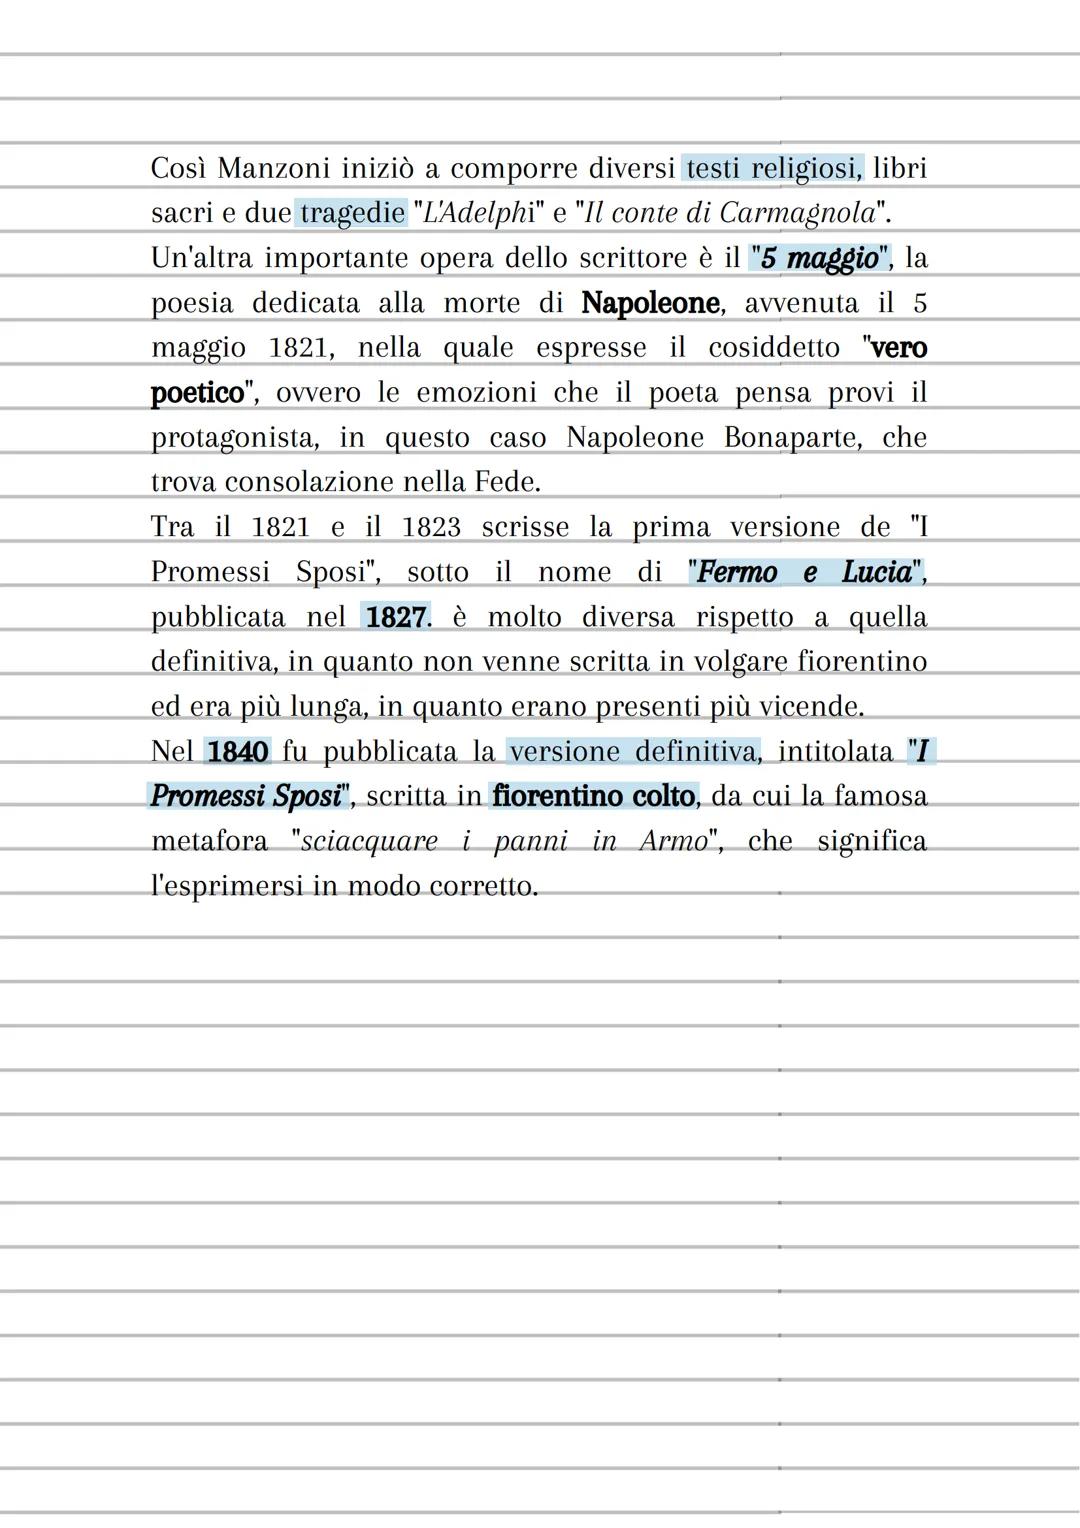 i Promessi Sposi
2
Uno dei pilastri fondamentali della lingua e cultura italiana
si tratta di un romanzo storico
storia non di "principici e